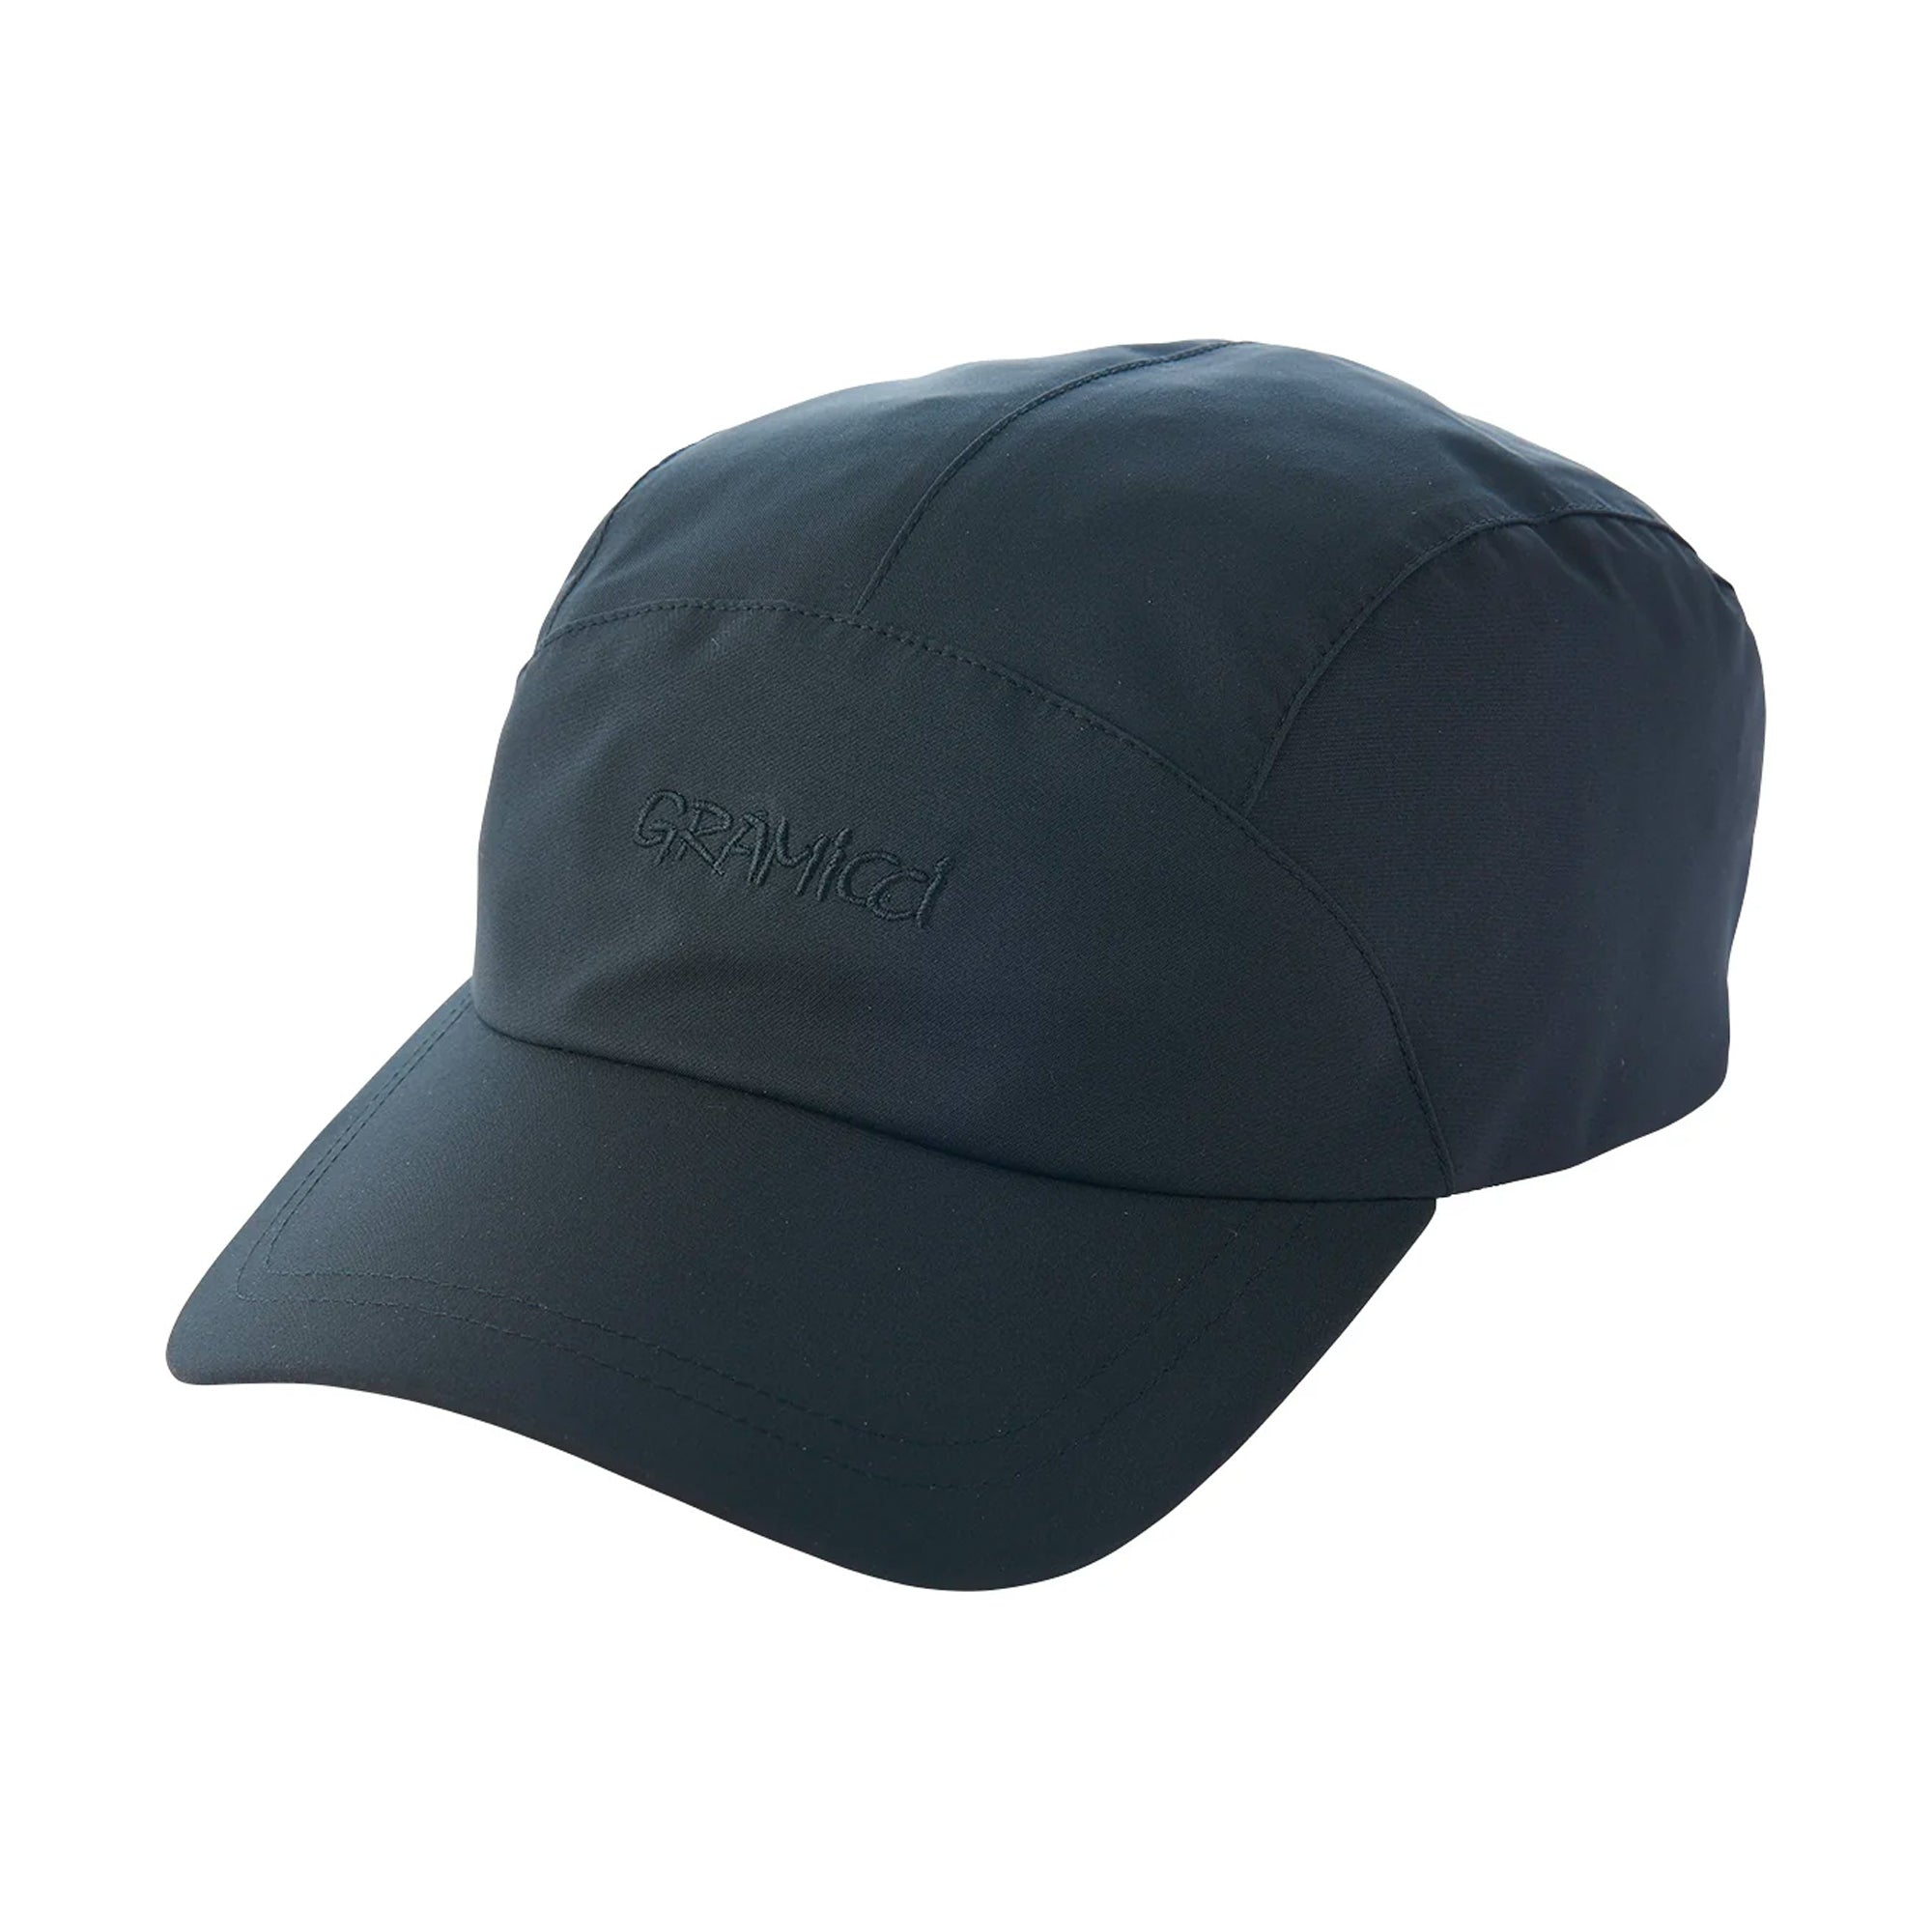 Gramicci Waterproof Laminated Cap - Black